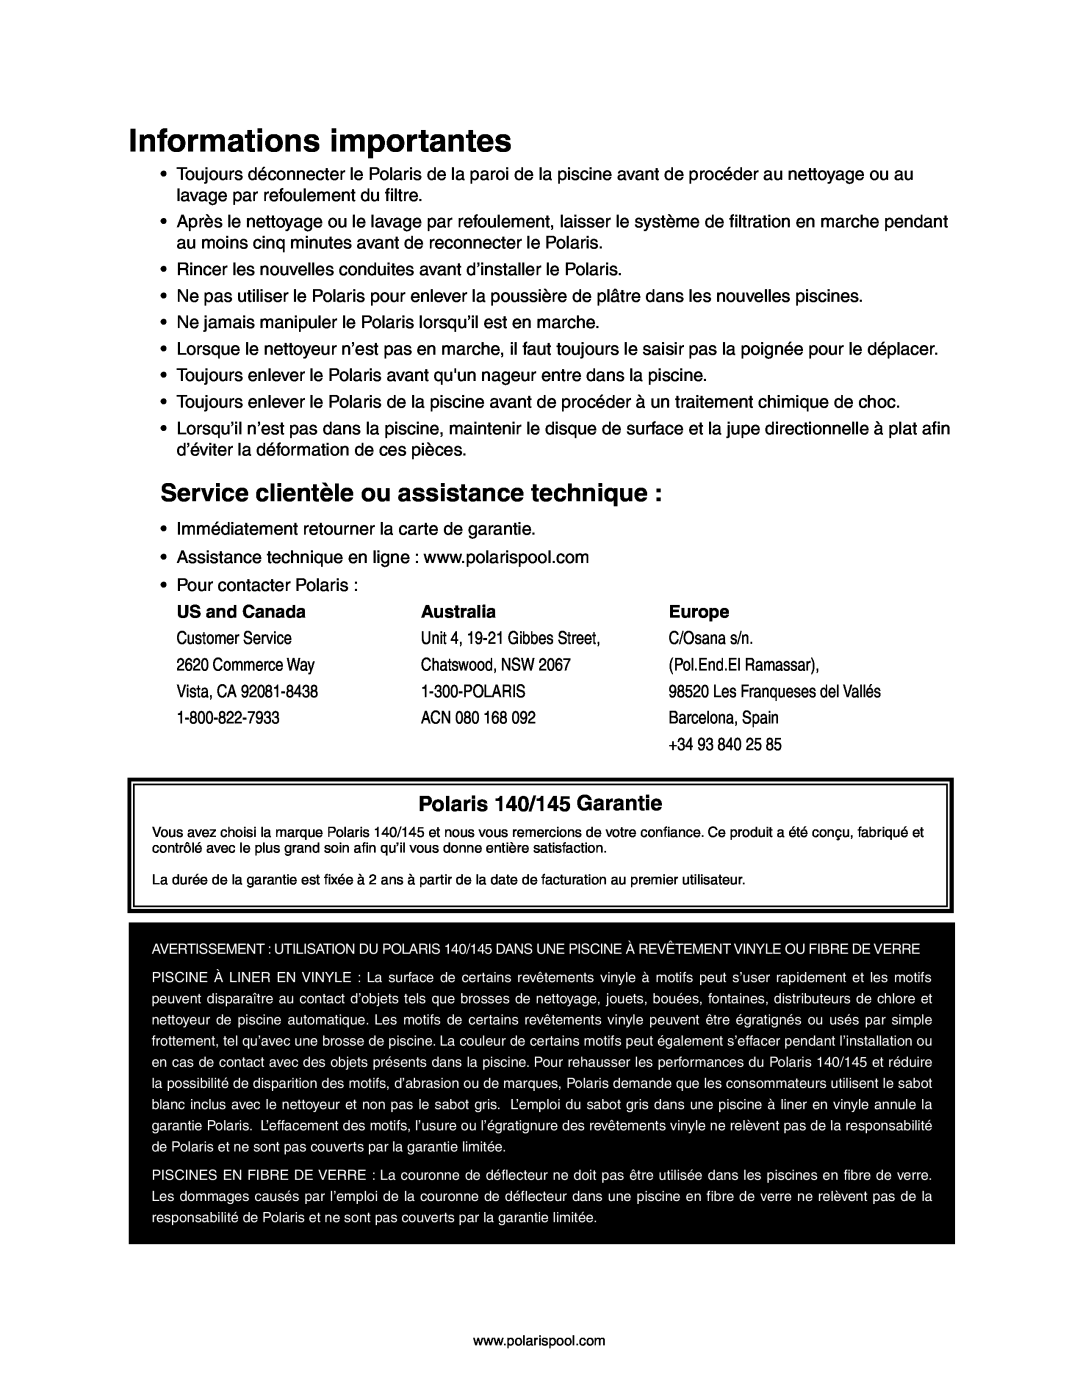 Polaris owner manual Informations importantes, Service clientèle ou assistance technique, Polaris 140/145 Garantie 